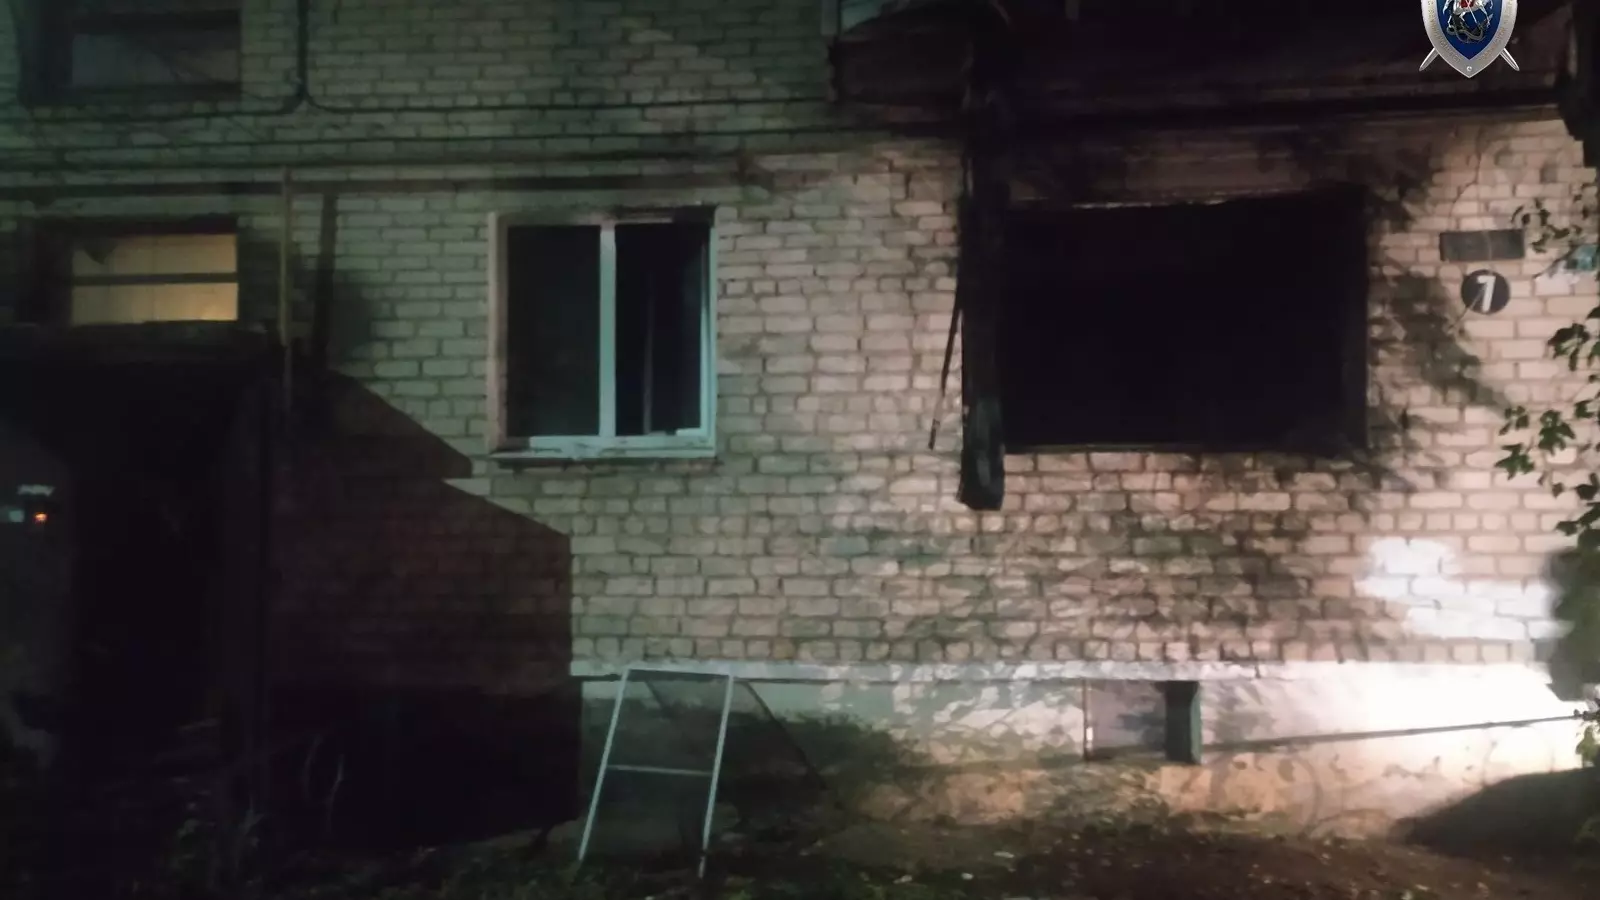 Следователи начали проверку из-за пожара в квартире в Заволжье